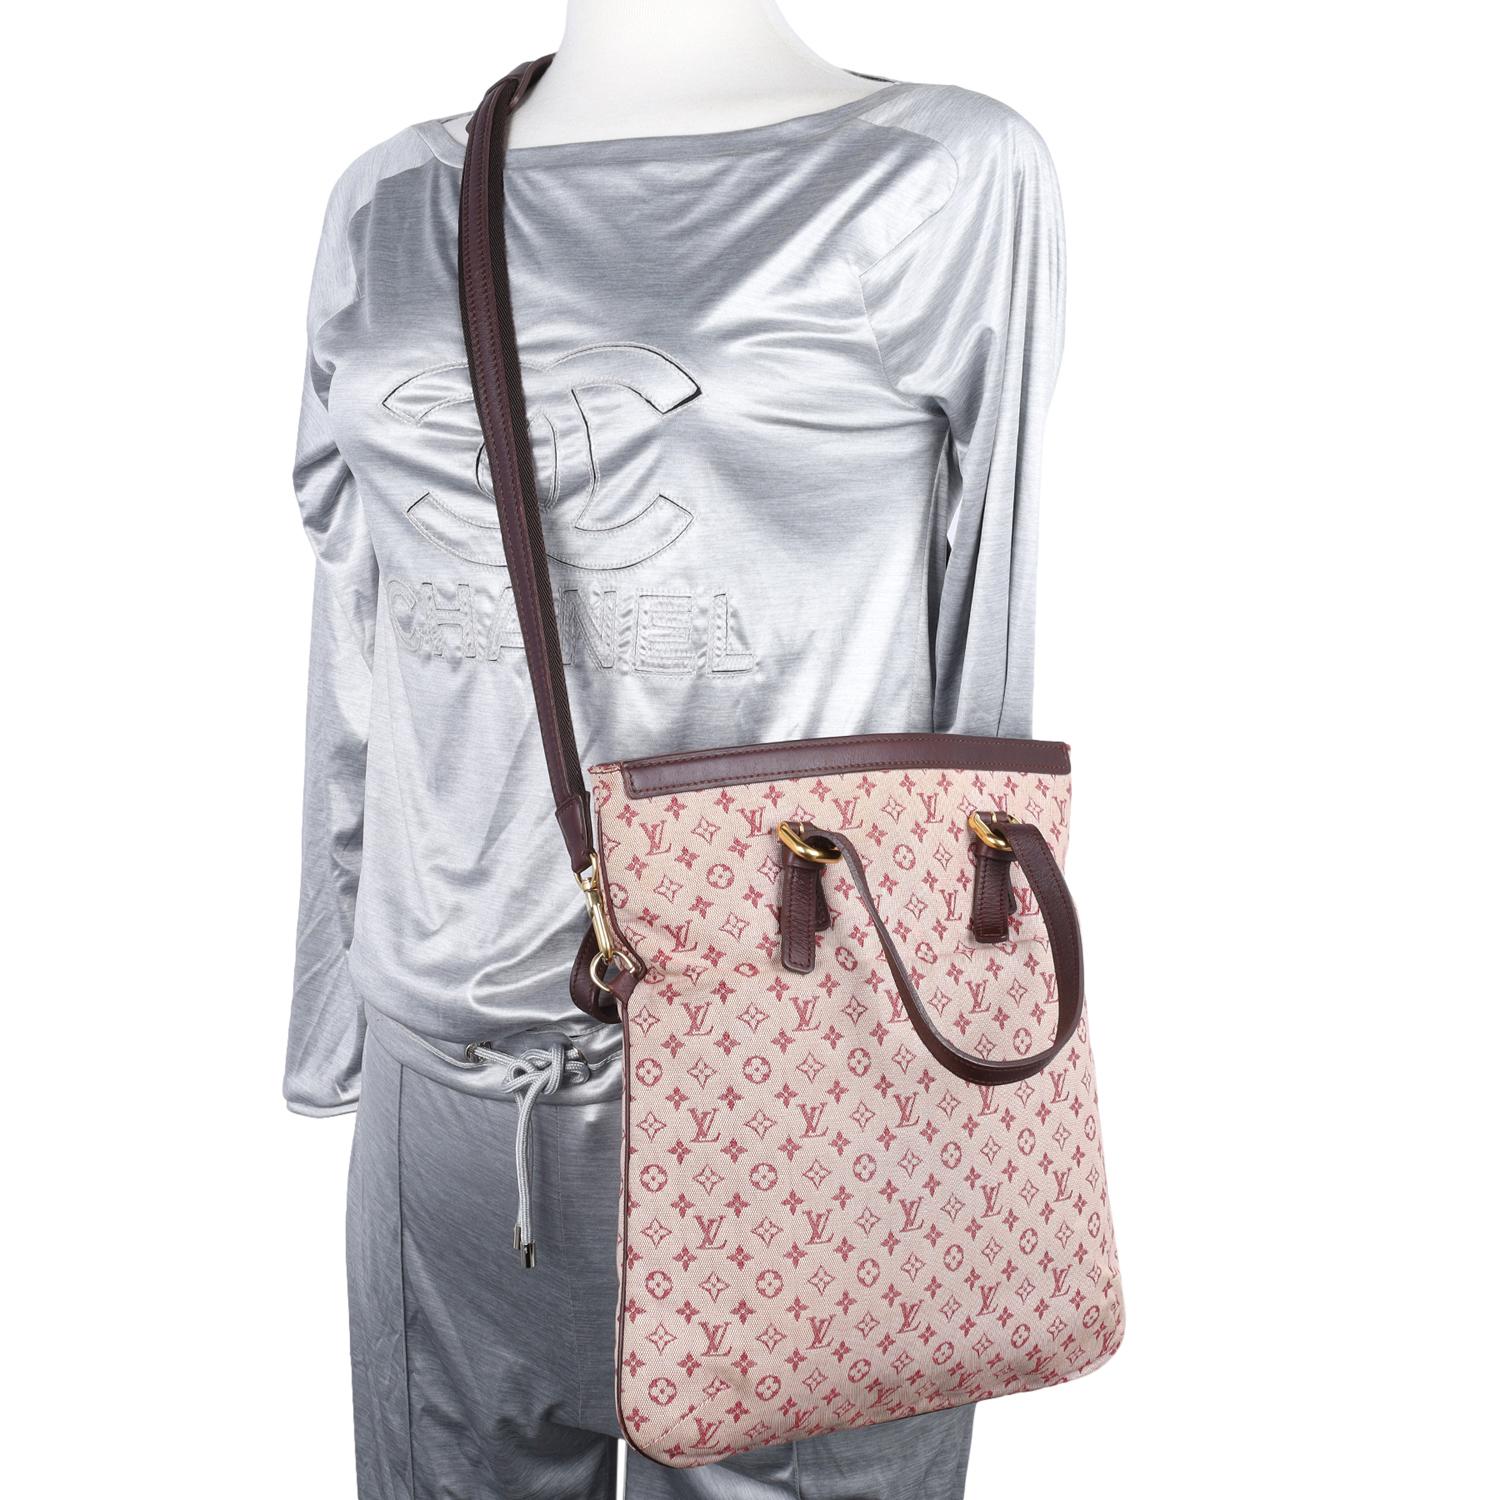 Authentique sac à main Louis Vuitton Maroon Mini Lin Francoise Shoulder Bag. Le parfait sac de jour ou de voyage. Comprend deux sangles de tailles différentes à utiliser comme sacs à bandoulière de longueurs différentes. Caractéristiques : toile